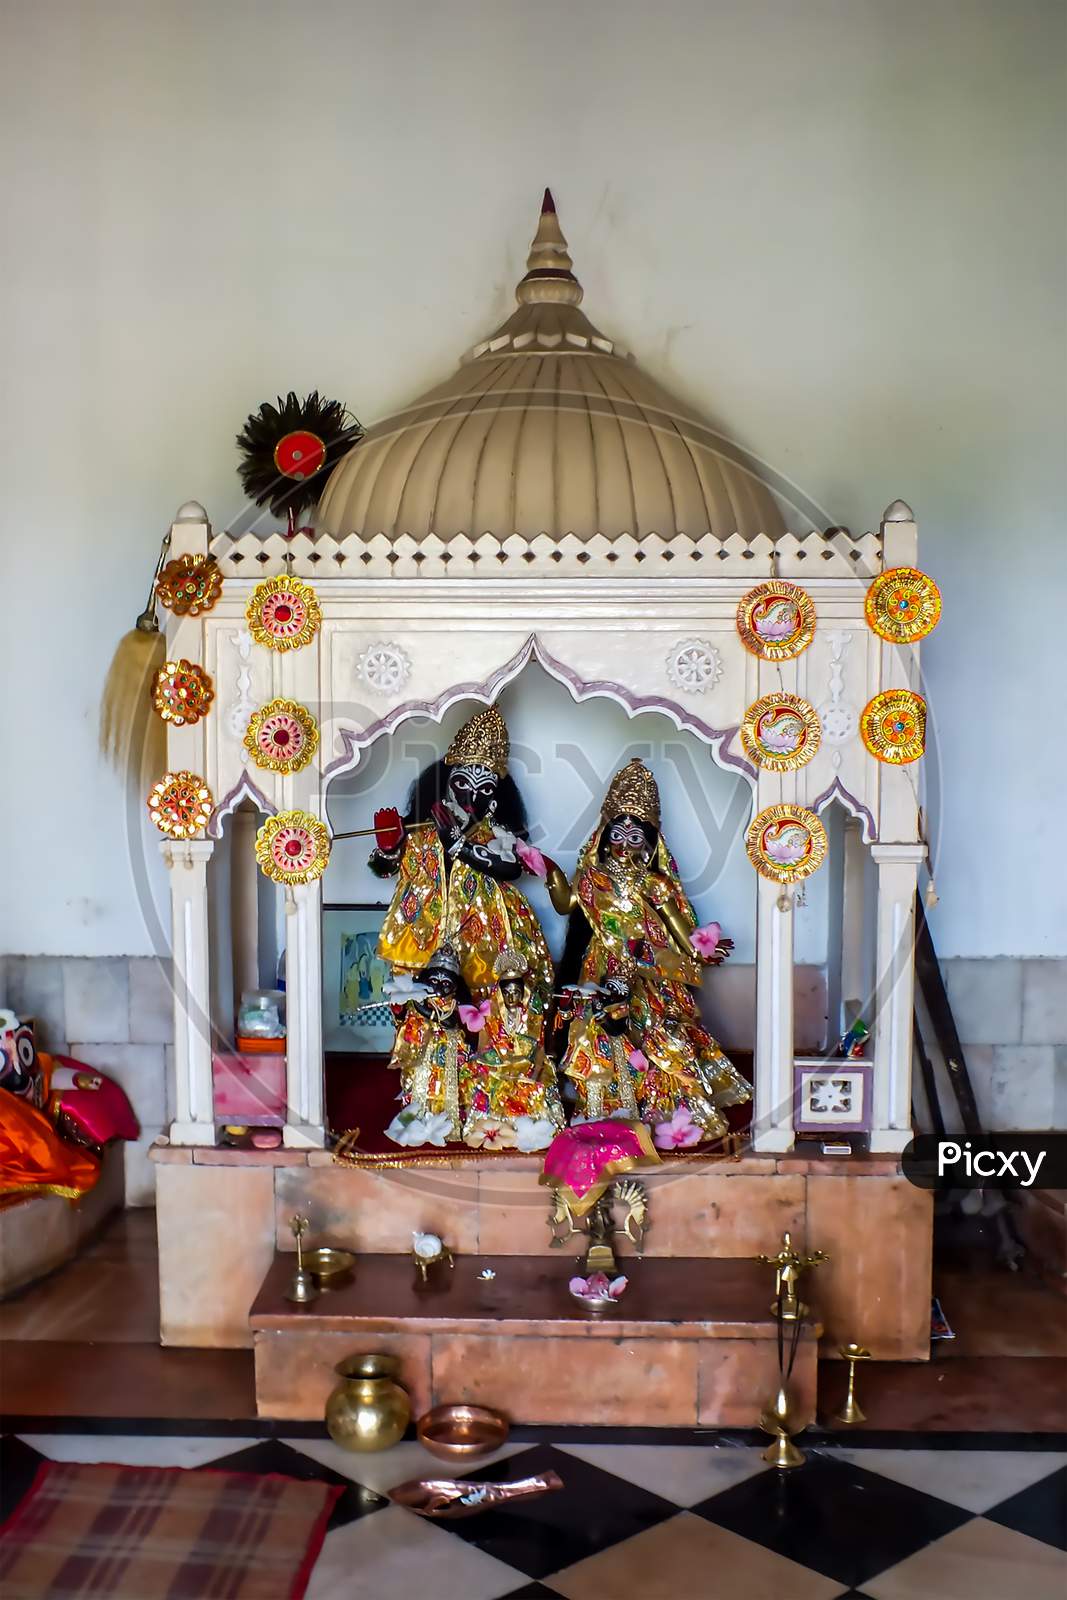 The very beautiful old Radha Krishna idol